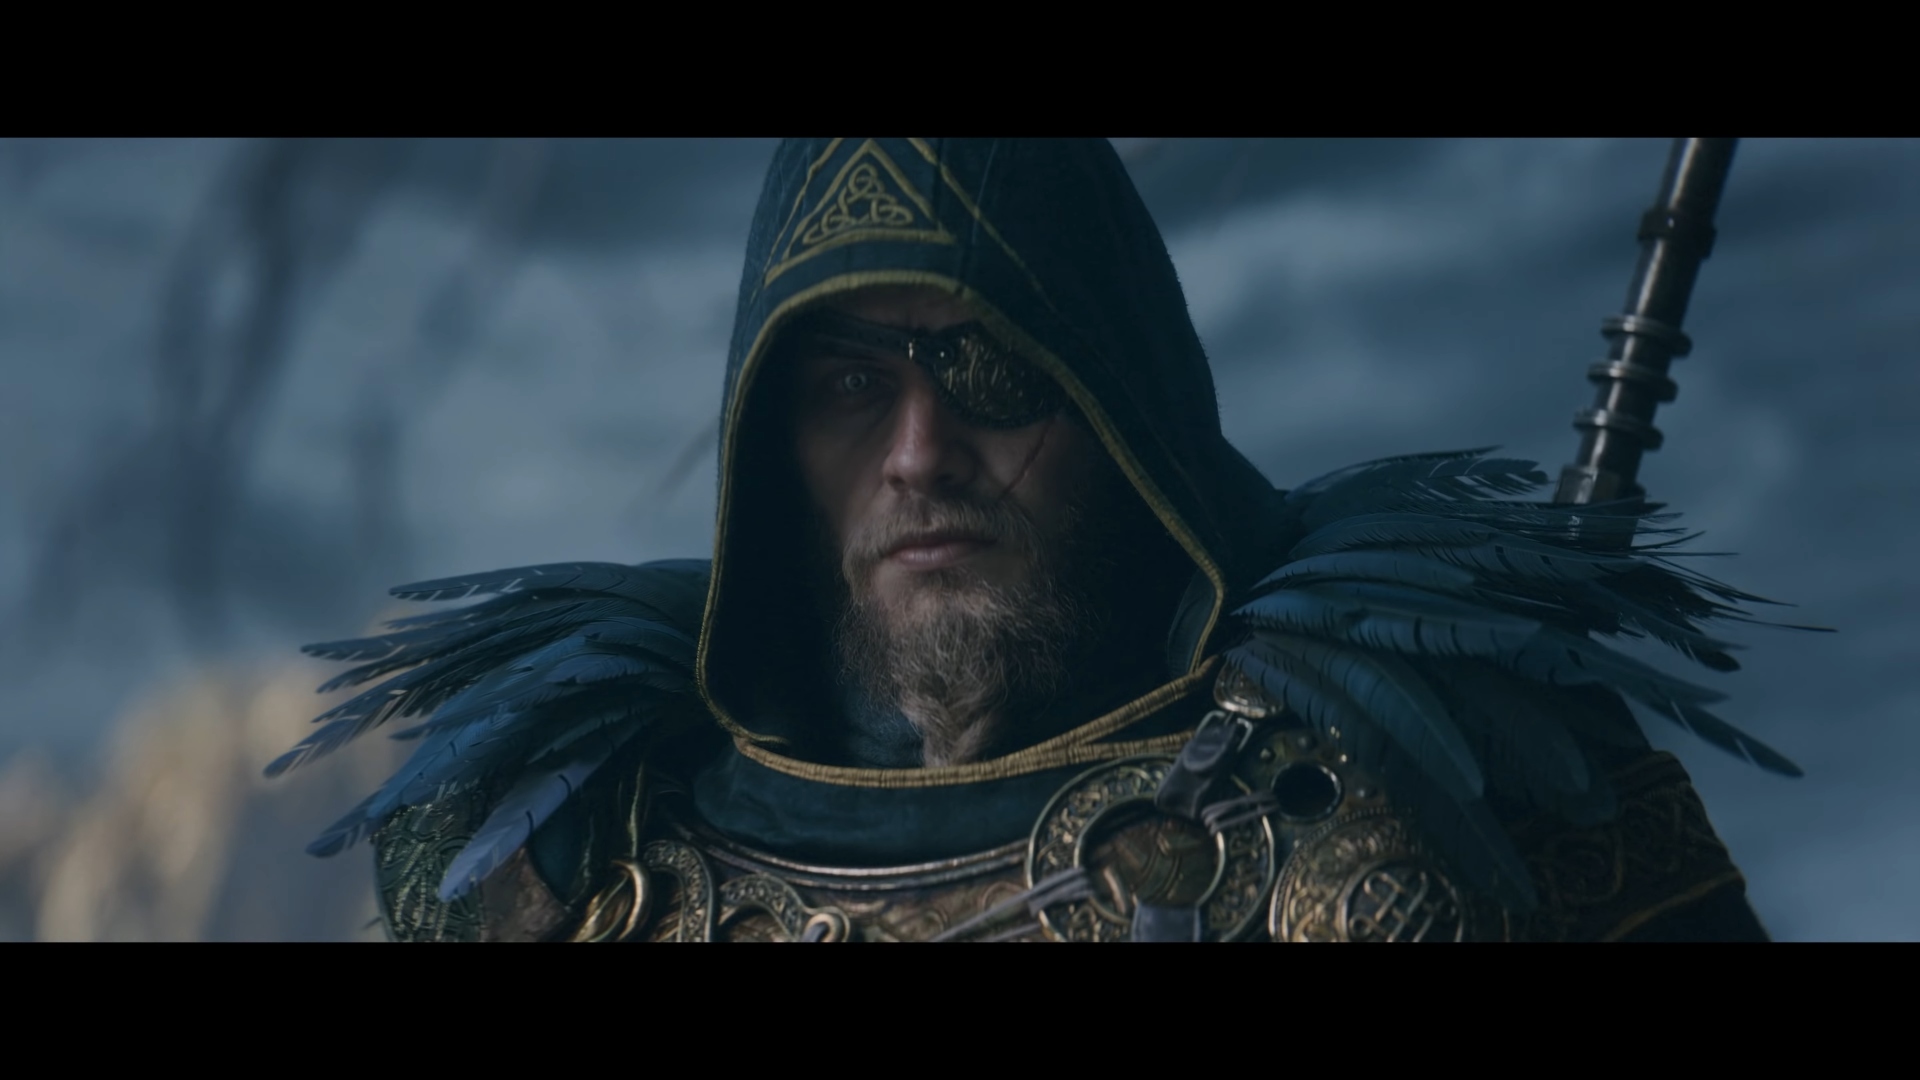 Assassin's Creed Valhalla: Dawn of Ragnarök